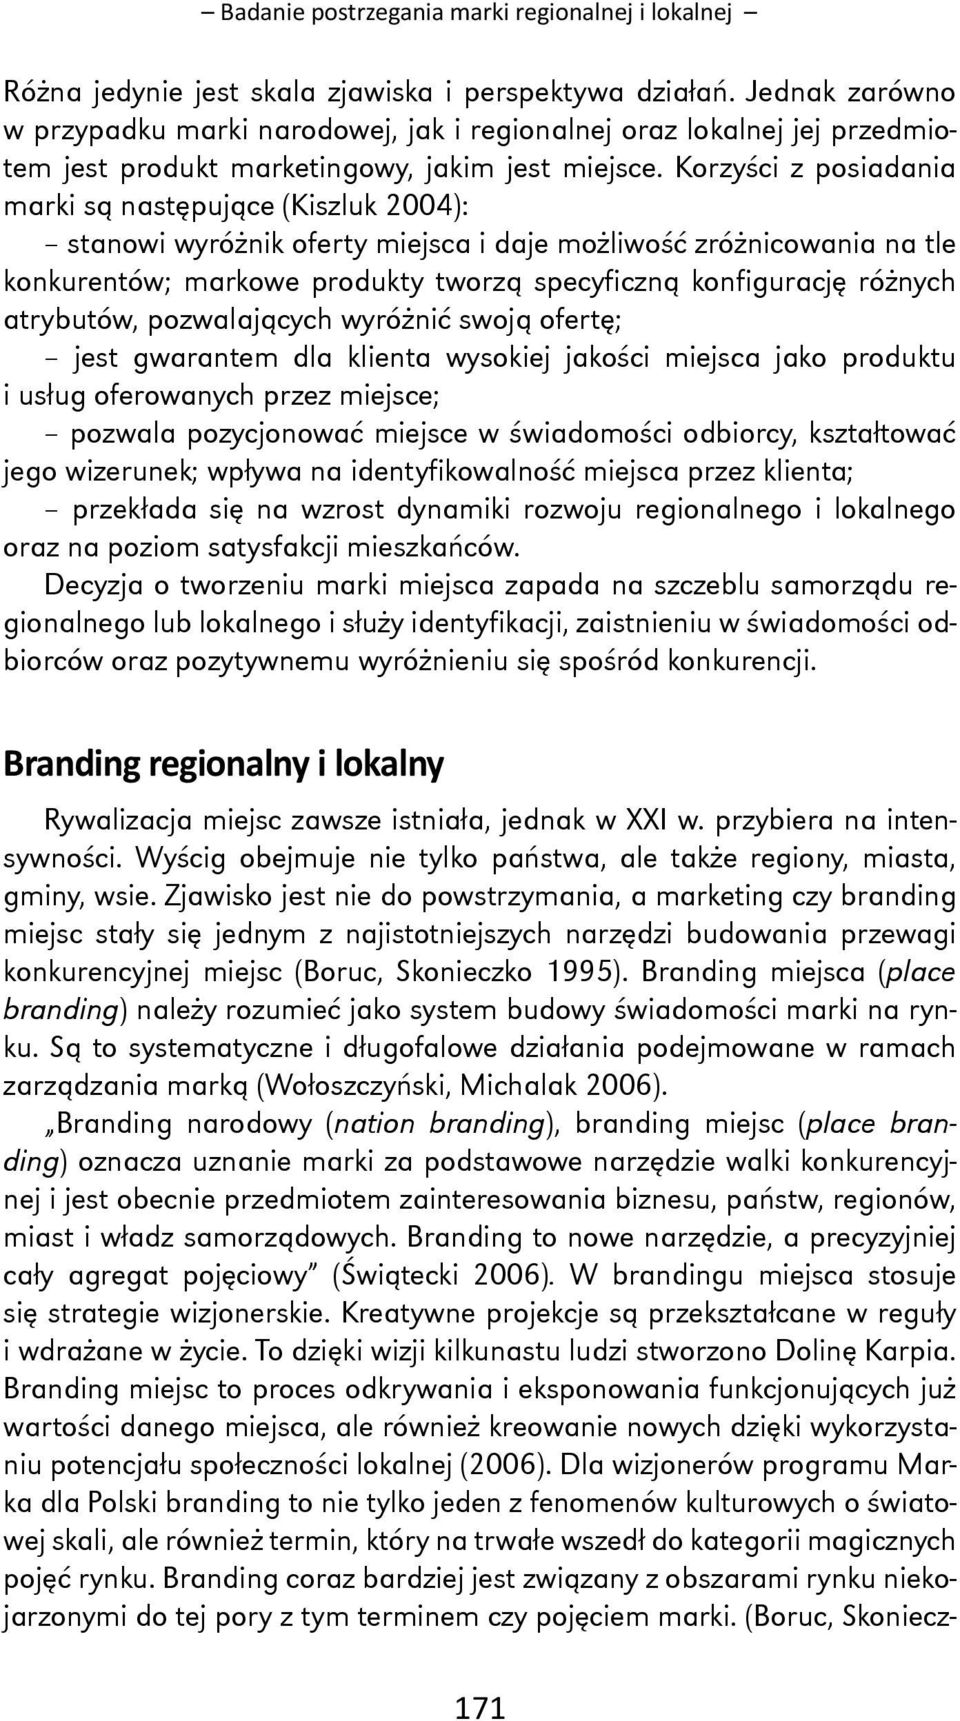 Korzyści z posiadania marki są następujące (Kiszluk 2004): stanowi wyróżnik oferty miejsca i daje możliwość zróżnicowania na tle konkurentów; markowe produkty tworzą specyficzną konfigurację różnych